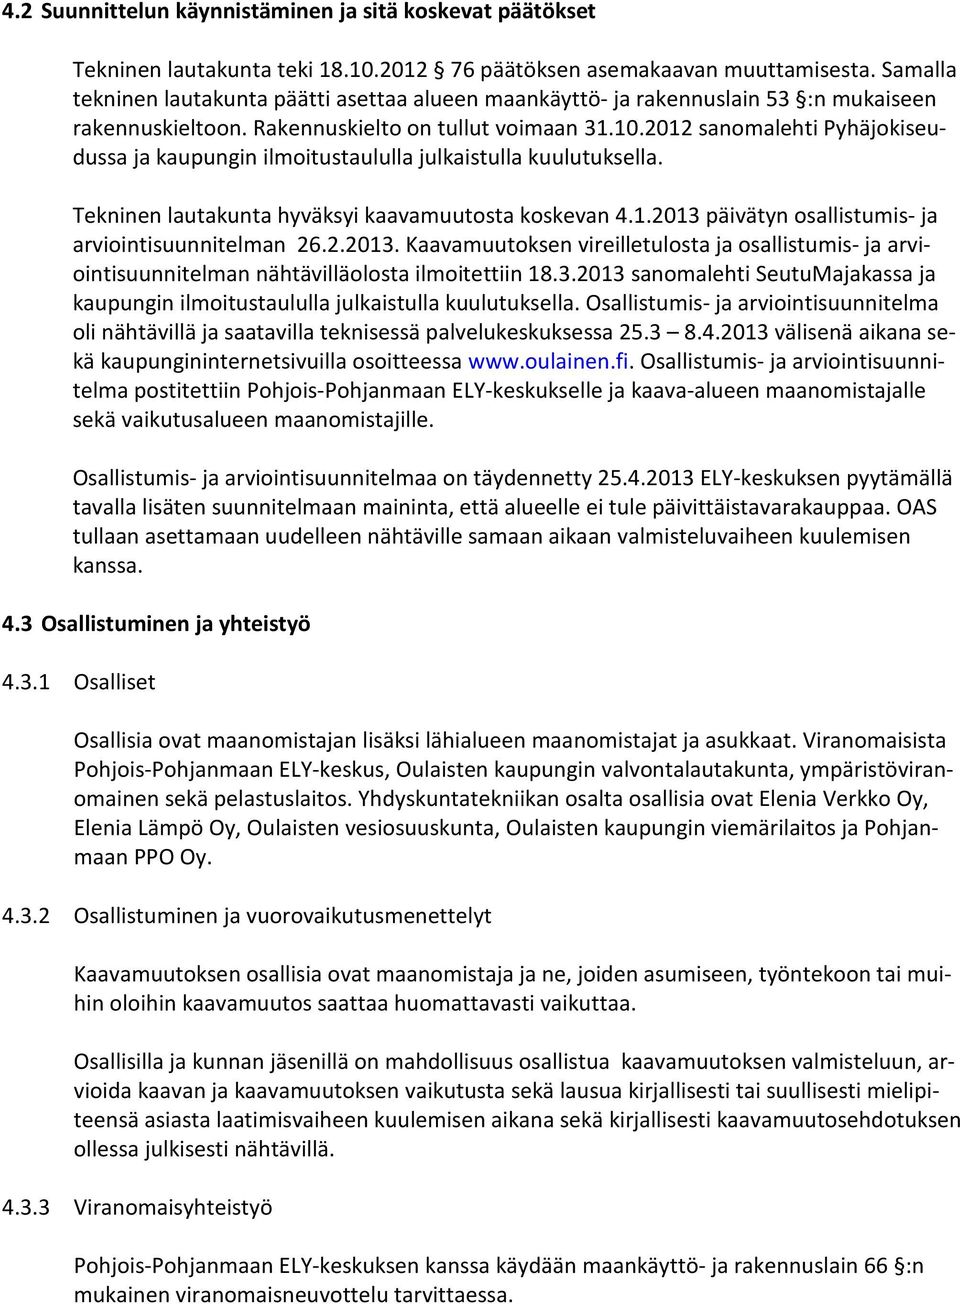 2012 sanomalehti Pyhäjokiseudussa ja kaupungin ilmoitustaululla julkaistulla kuulutuksella. Tekninen lautakunta hyväksyi kaavamuutosta koskevan 4.1.2013 päivätyn osallistumis- ja arviointisuunnitelman 26.